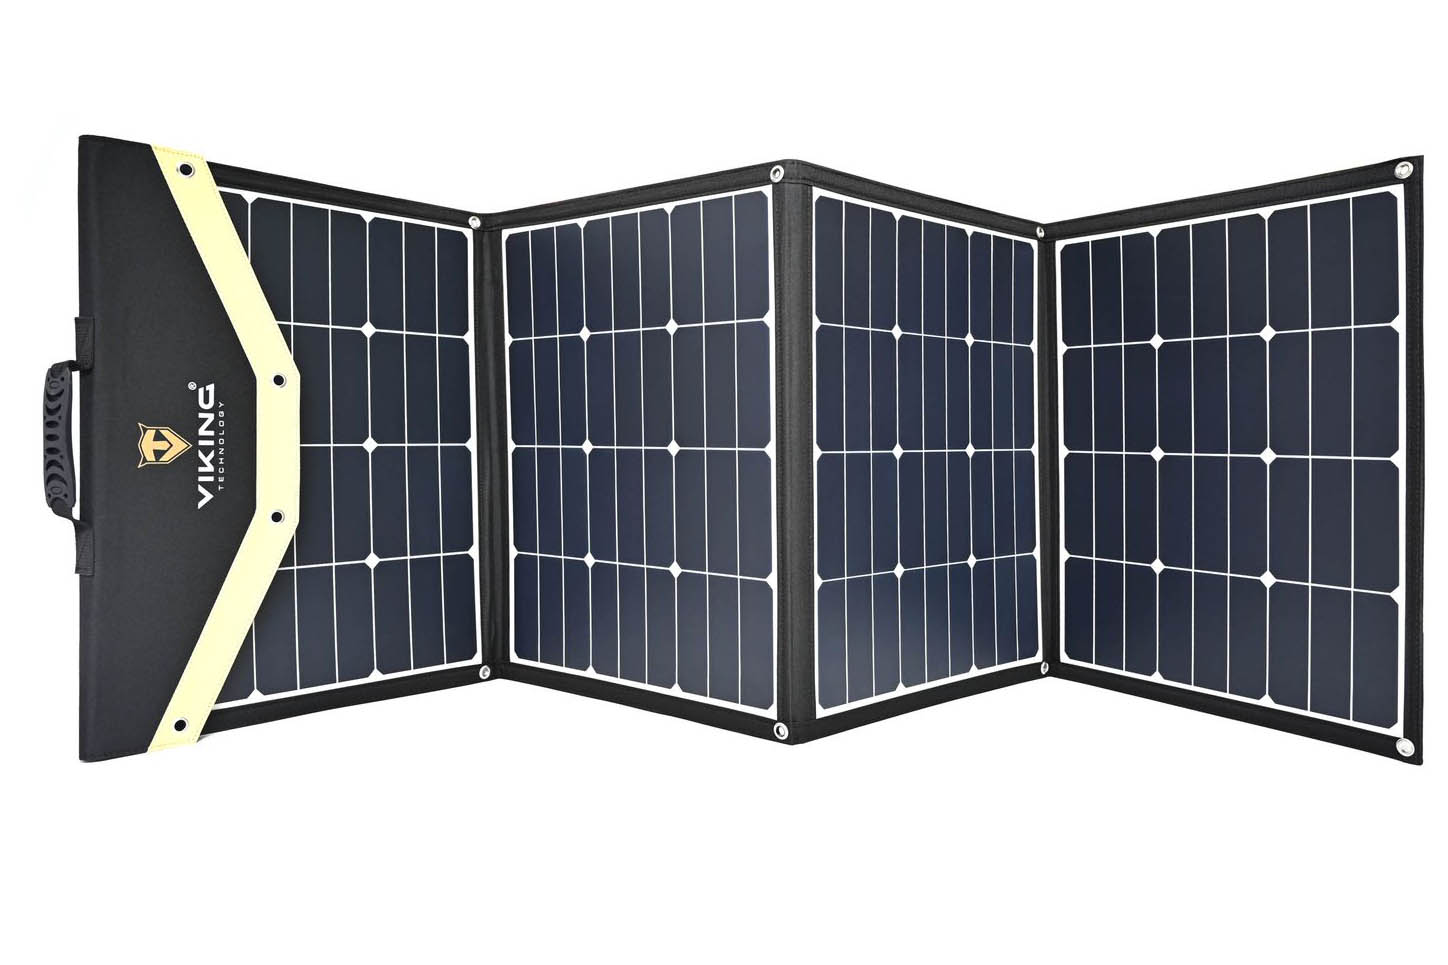 Solárny panel Viking L180 